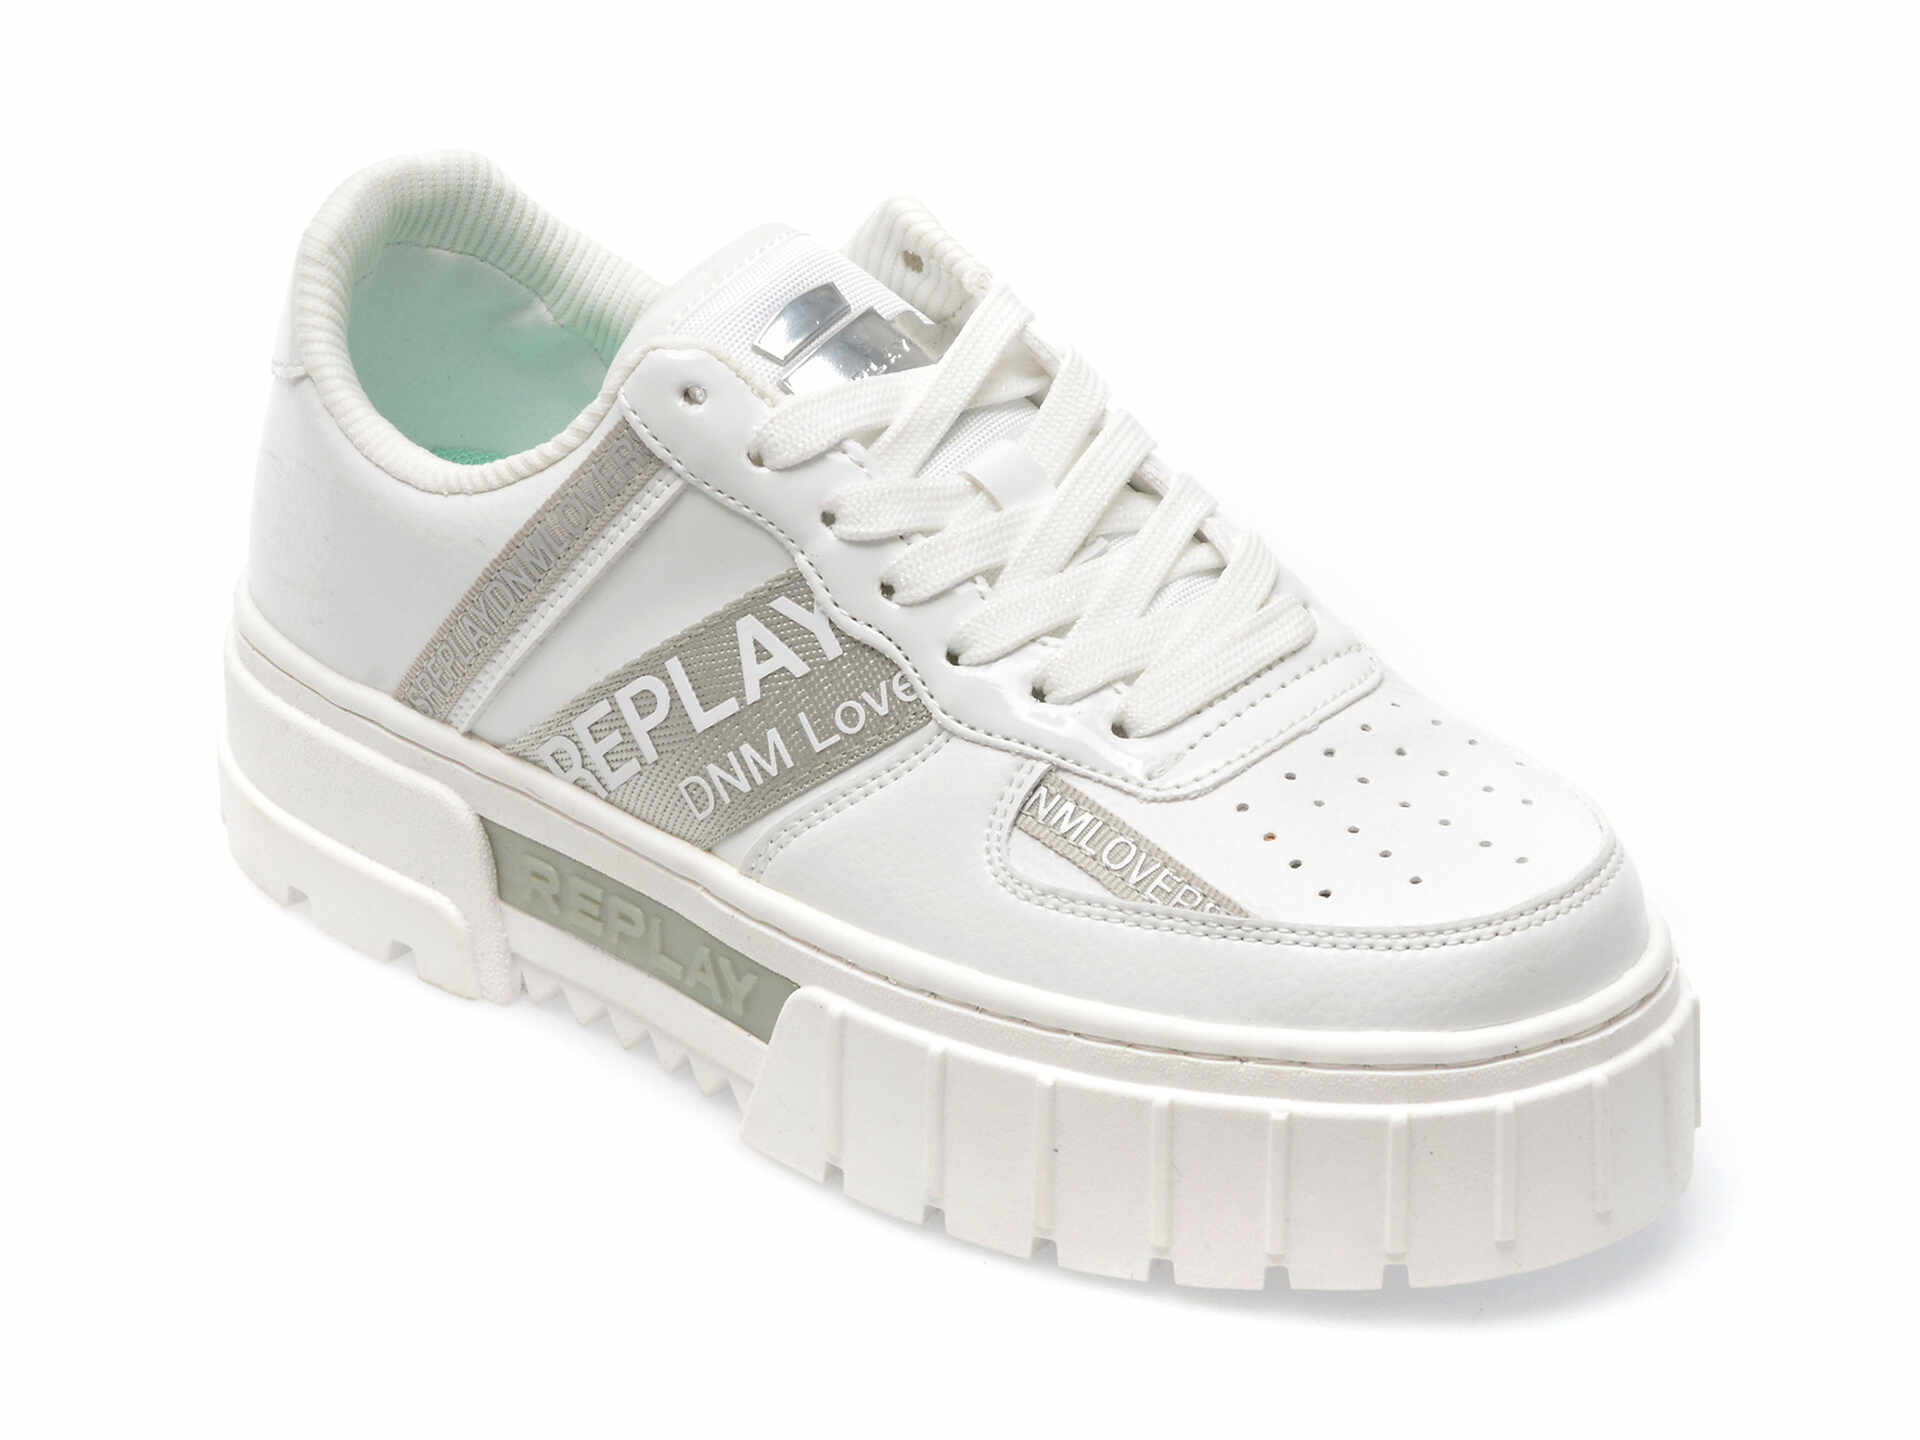 Pantofi REPLAY albi, WZ4E08S, din piele ecologica